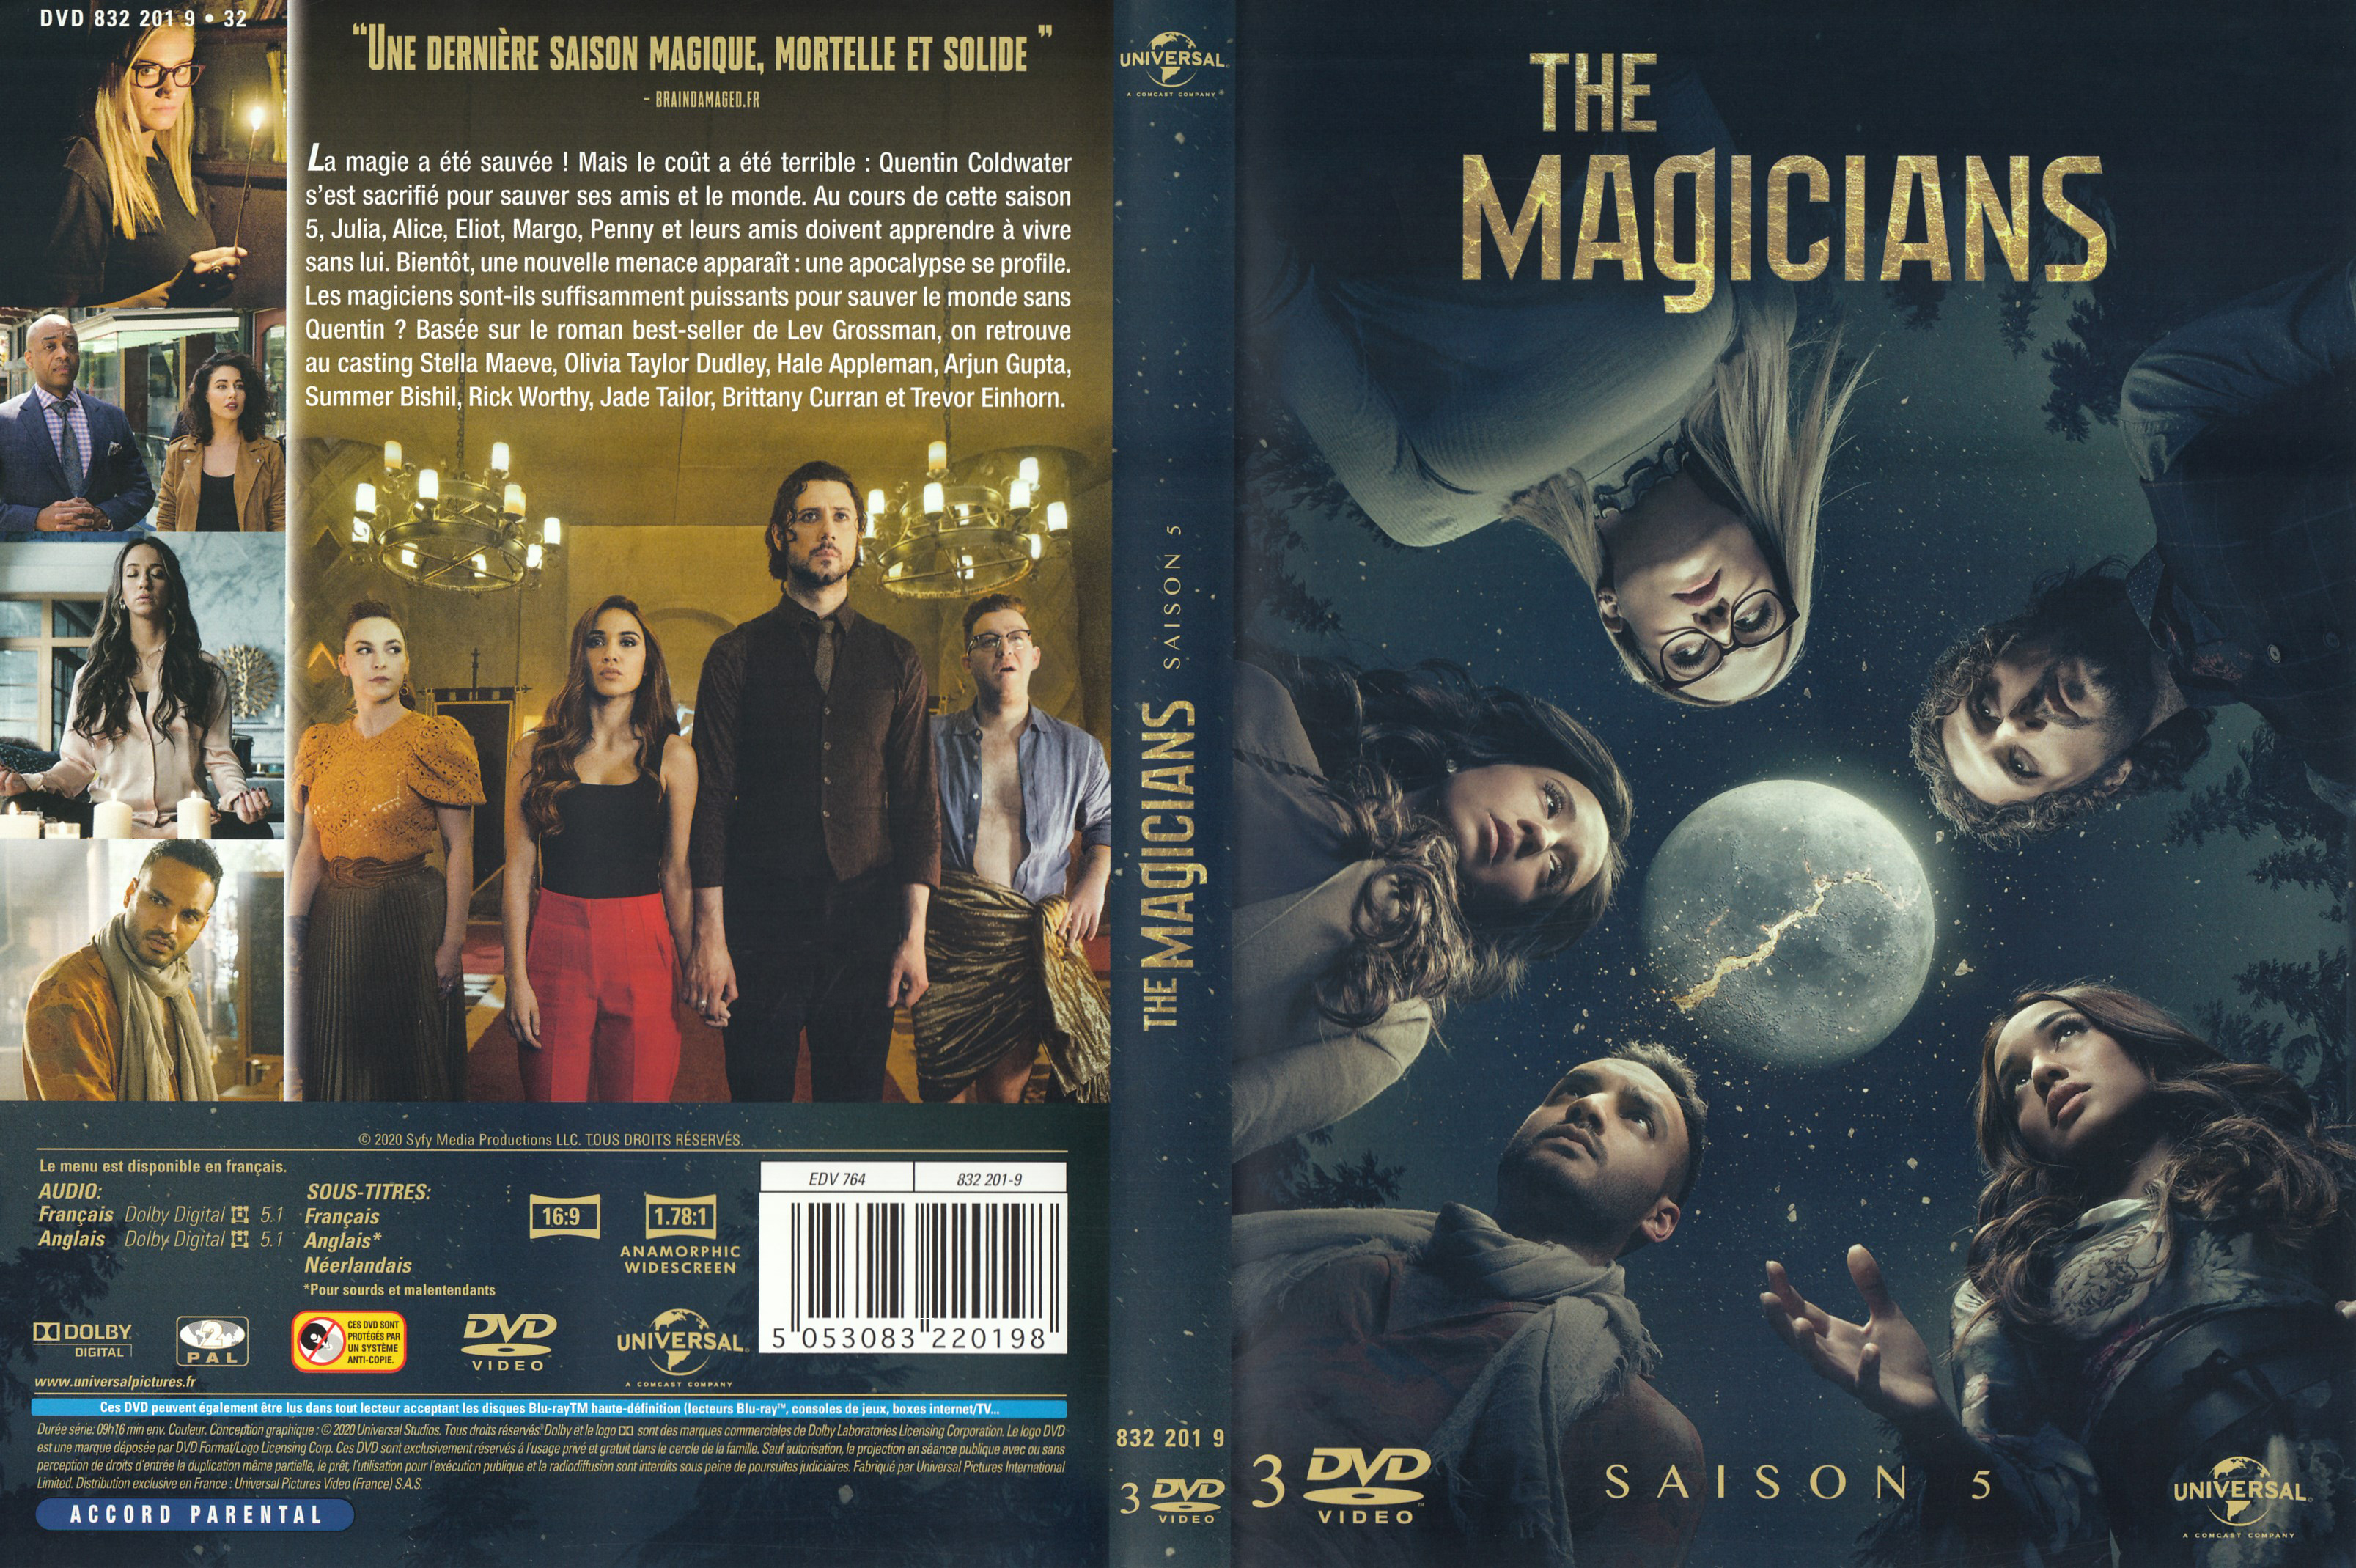 Jaquette DVD The magicians saison 5